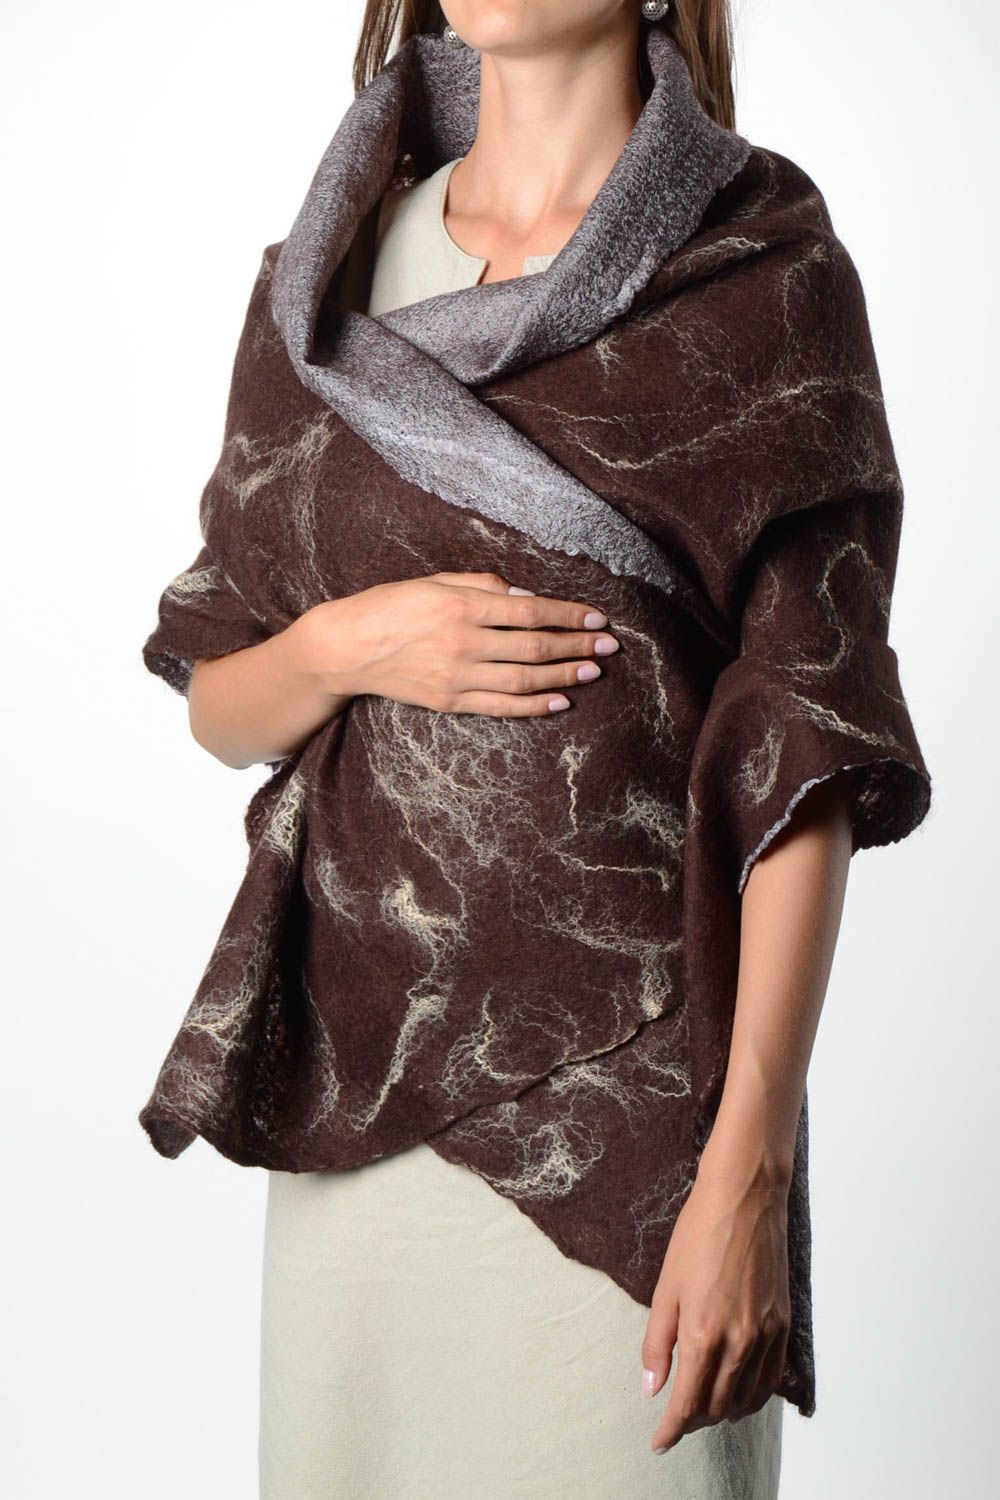 Палантин ручной работы женский шарф валяный палантин коричневый широкий фото 1